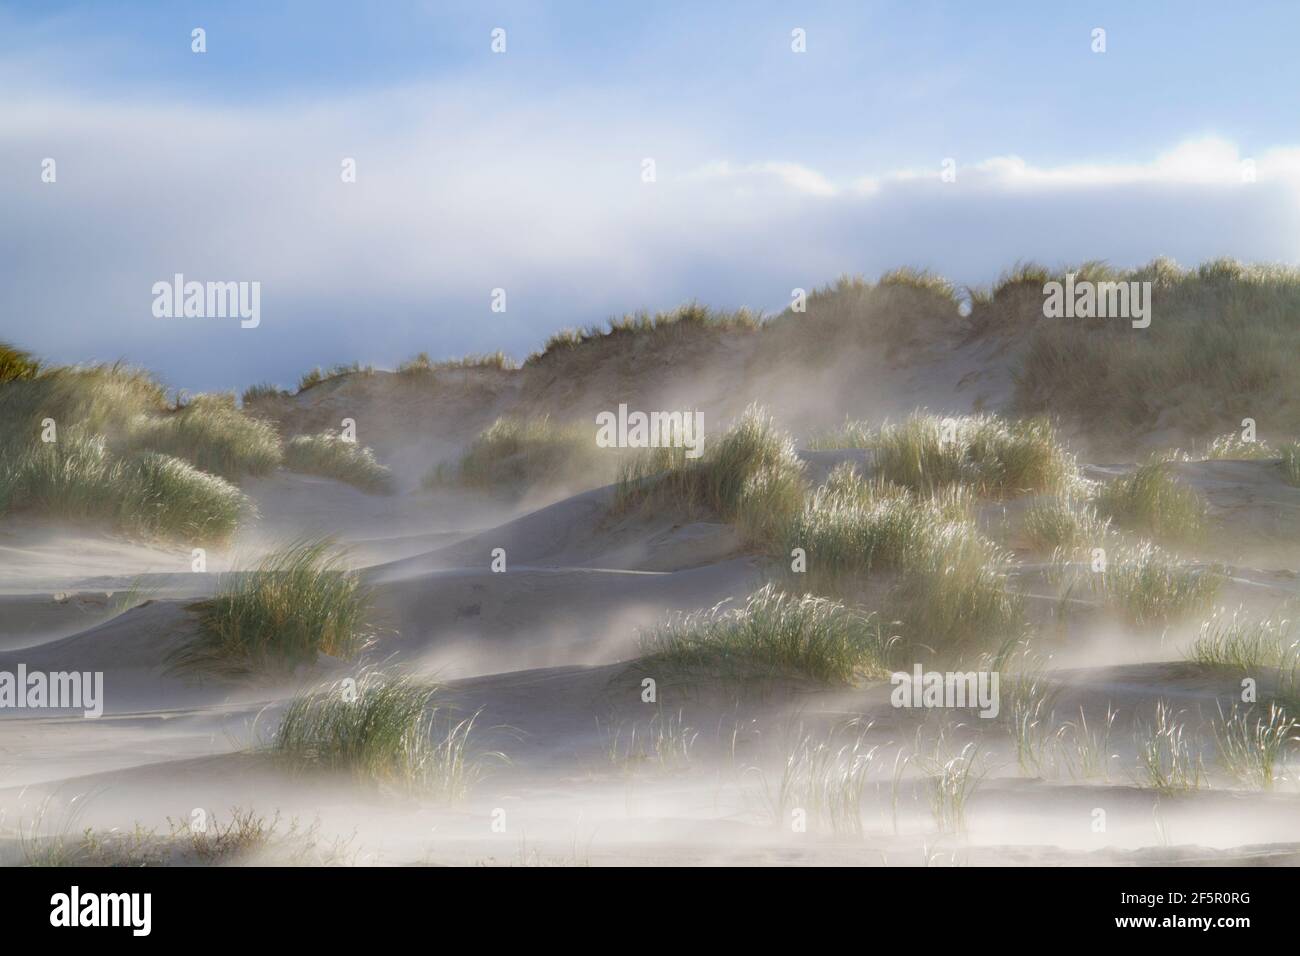 Sandstorm in dunes grown with Marram grass Stock Photo